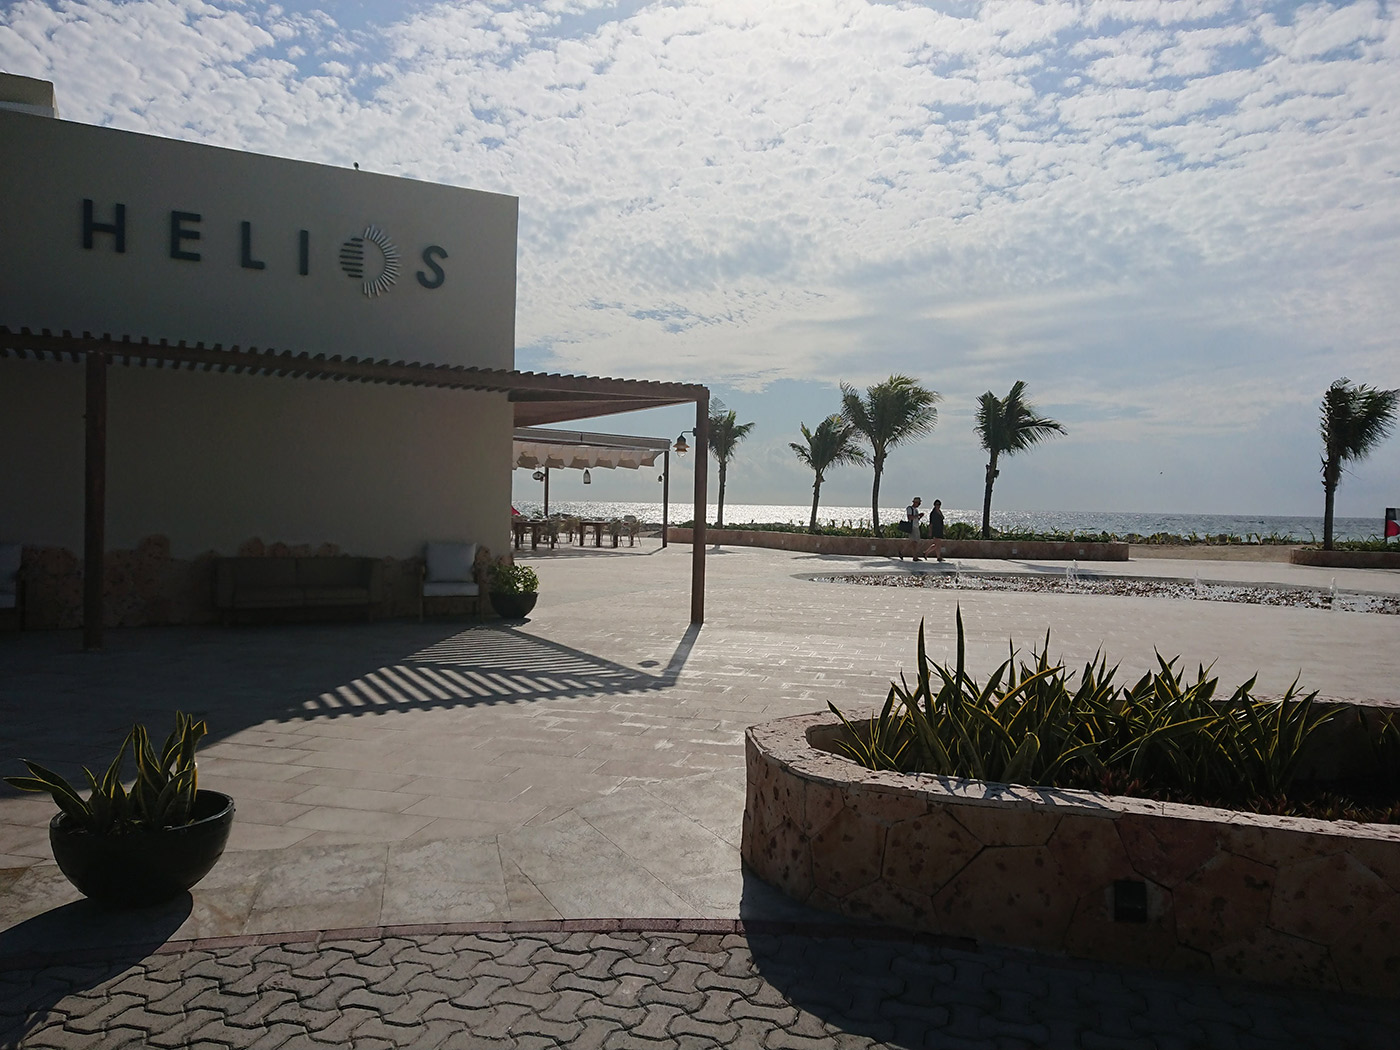 Helios beach bar and restaurant